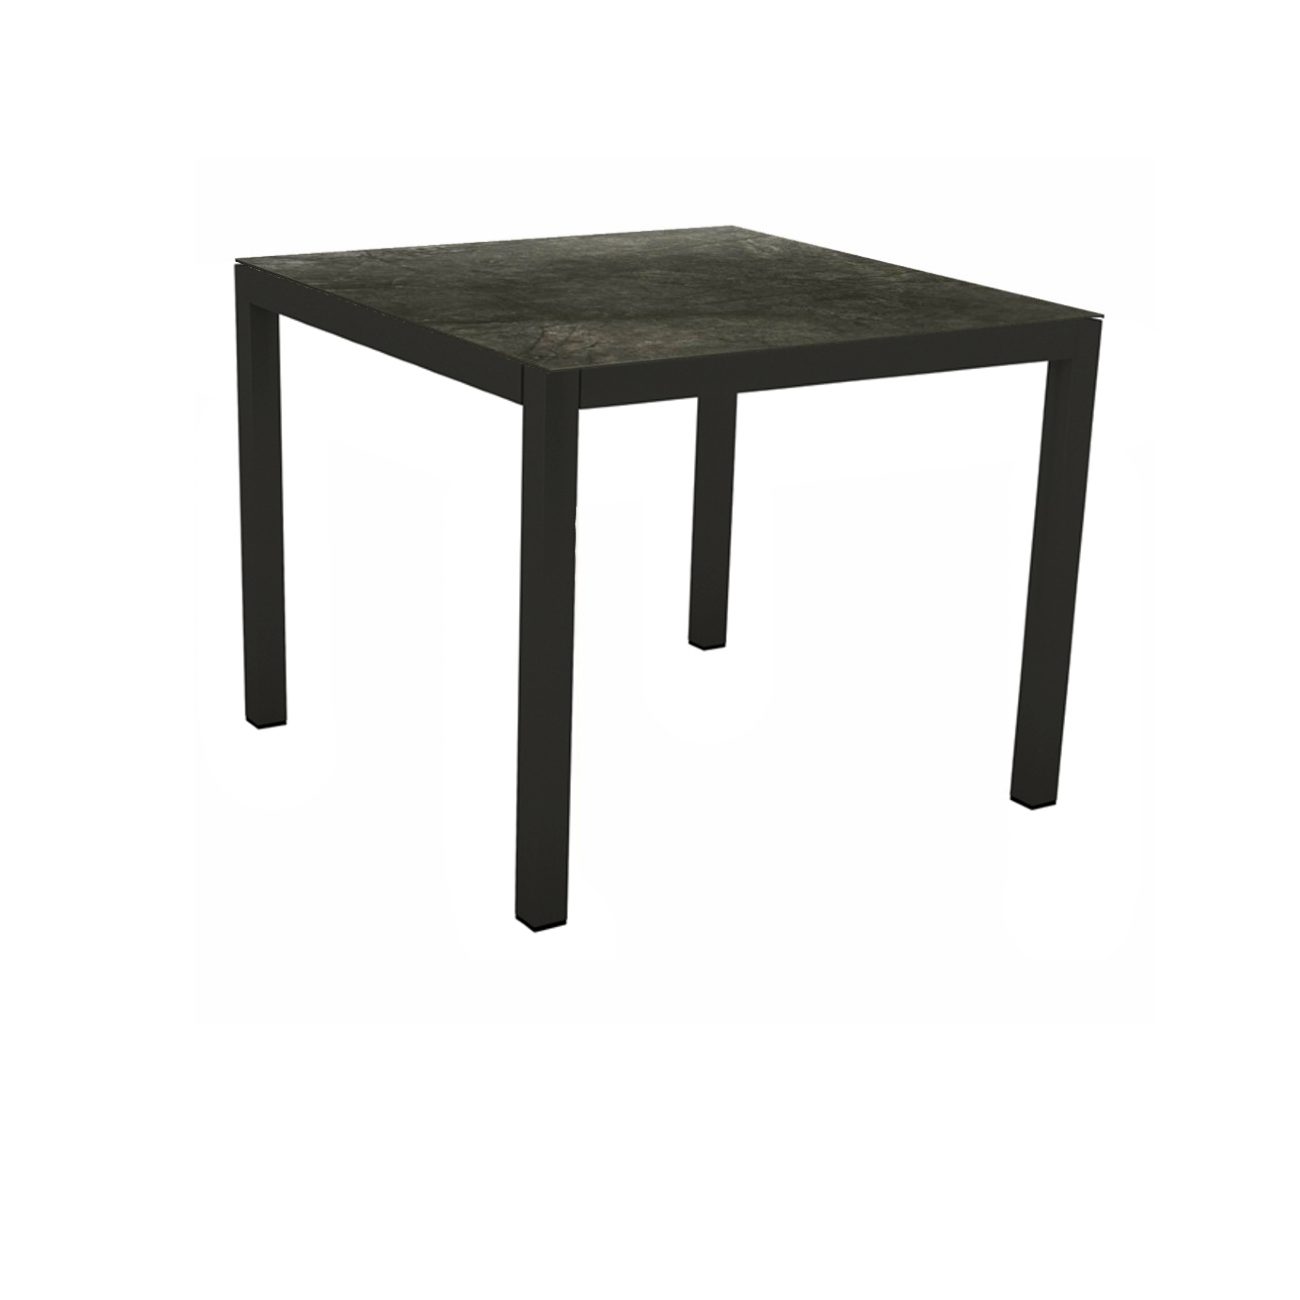 Stern Gartentisch, Gestell Aluminium schwarz matt, Tischplatte HPL Dark Marble, 80x80 cm